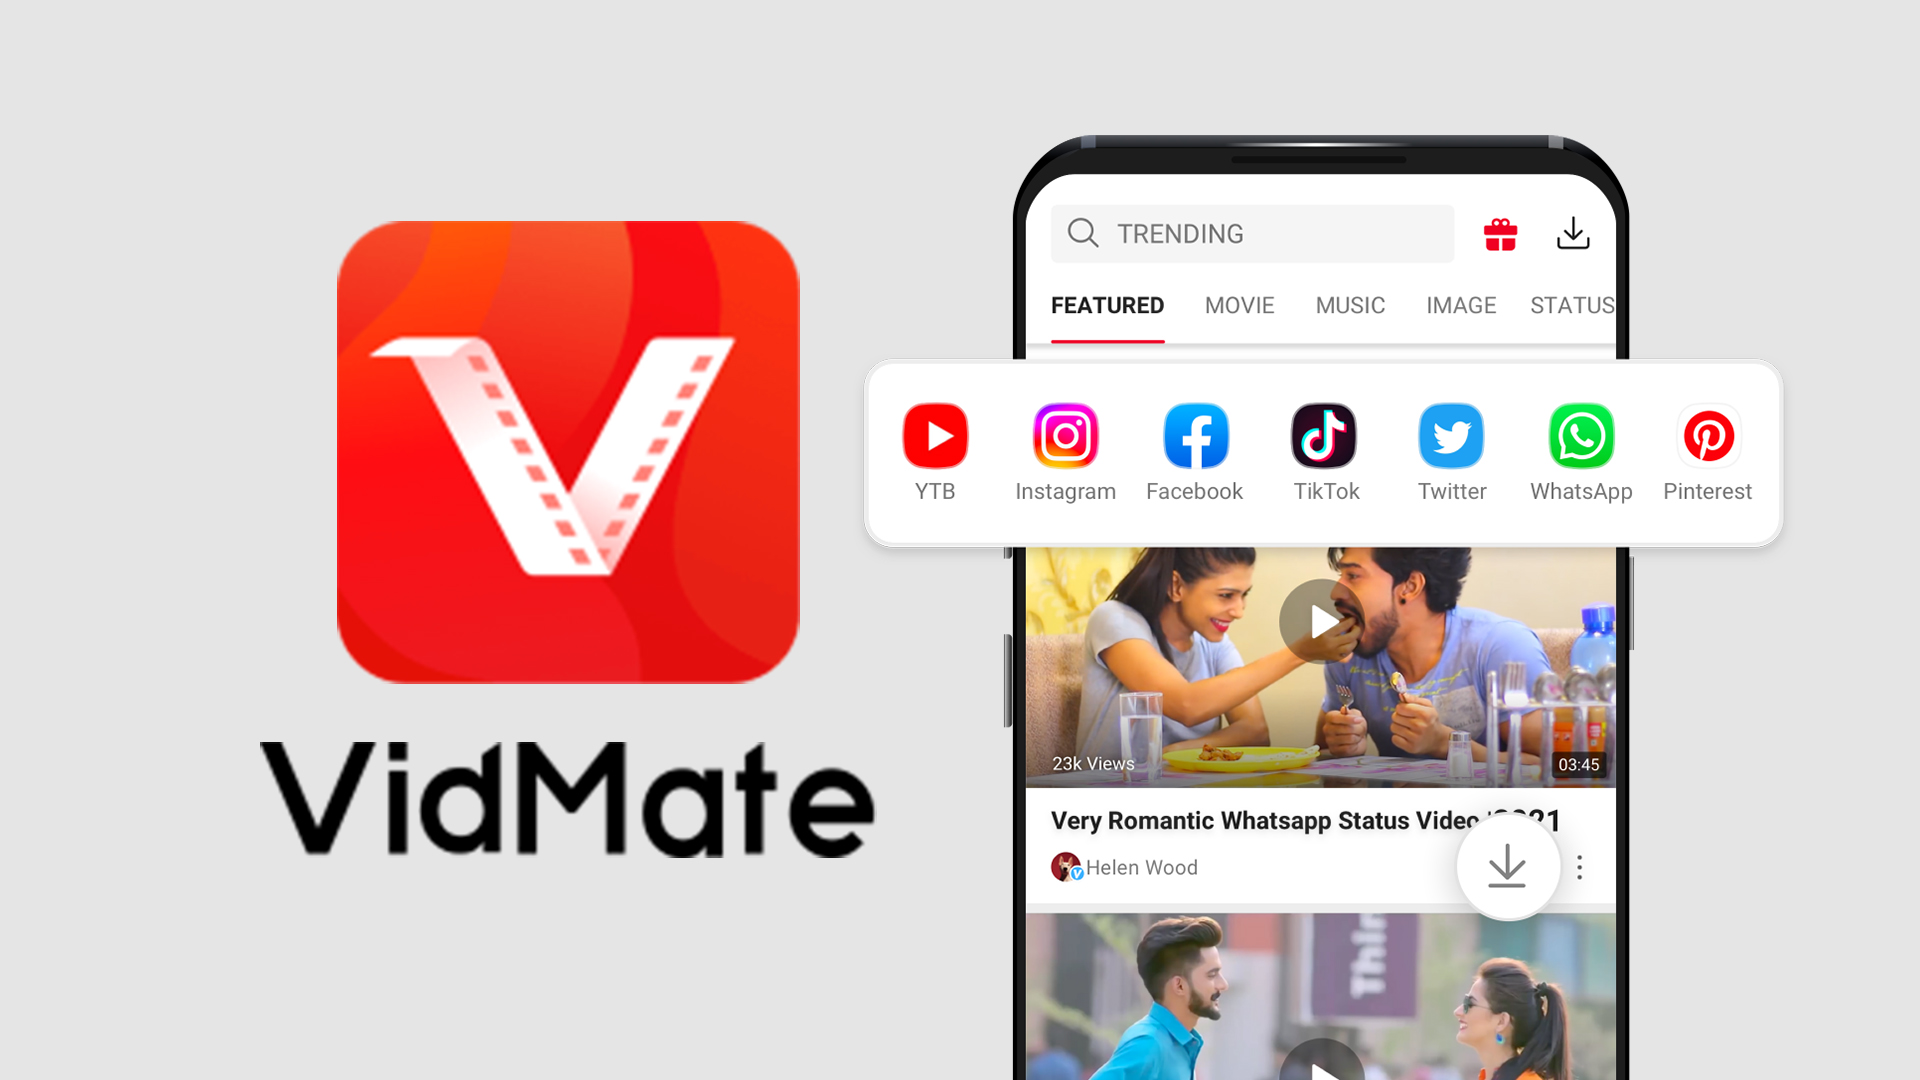 Link Download Aplikasi VidMate yang Asli Terbaru, Gratis Tanpa Iklan